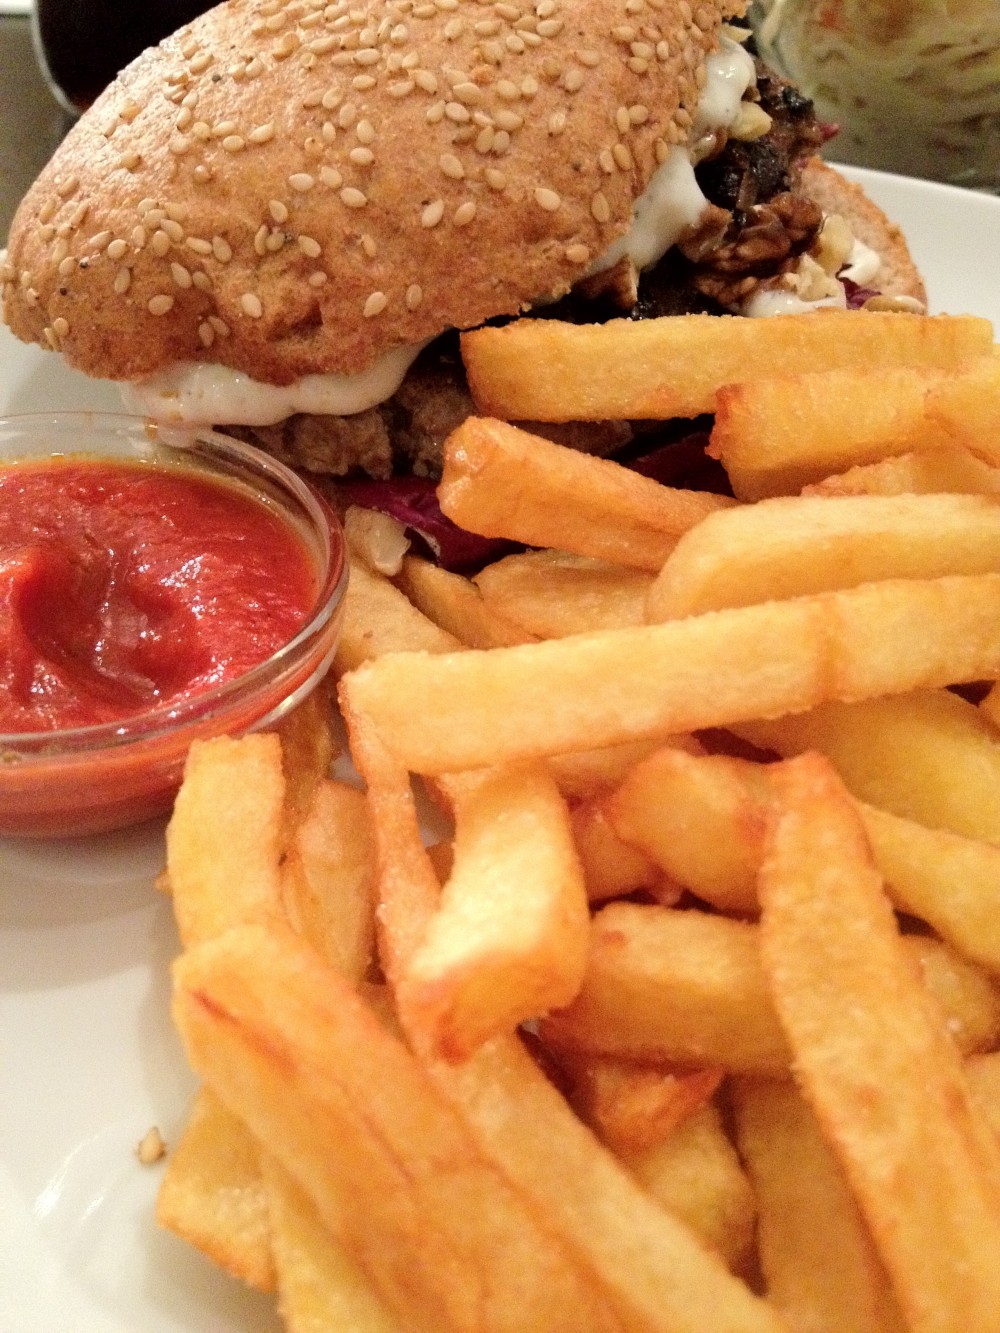 Gorgonzola Burger sehr lecker, derzeit auf Sommerpause kommt aber ... - die burgermacher - Wien